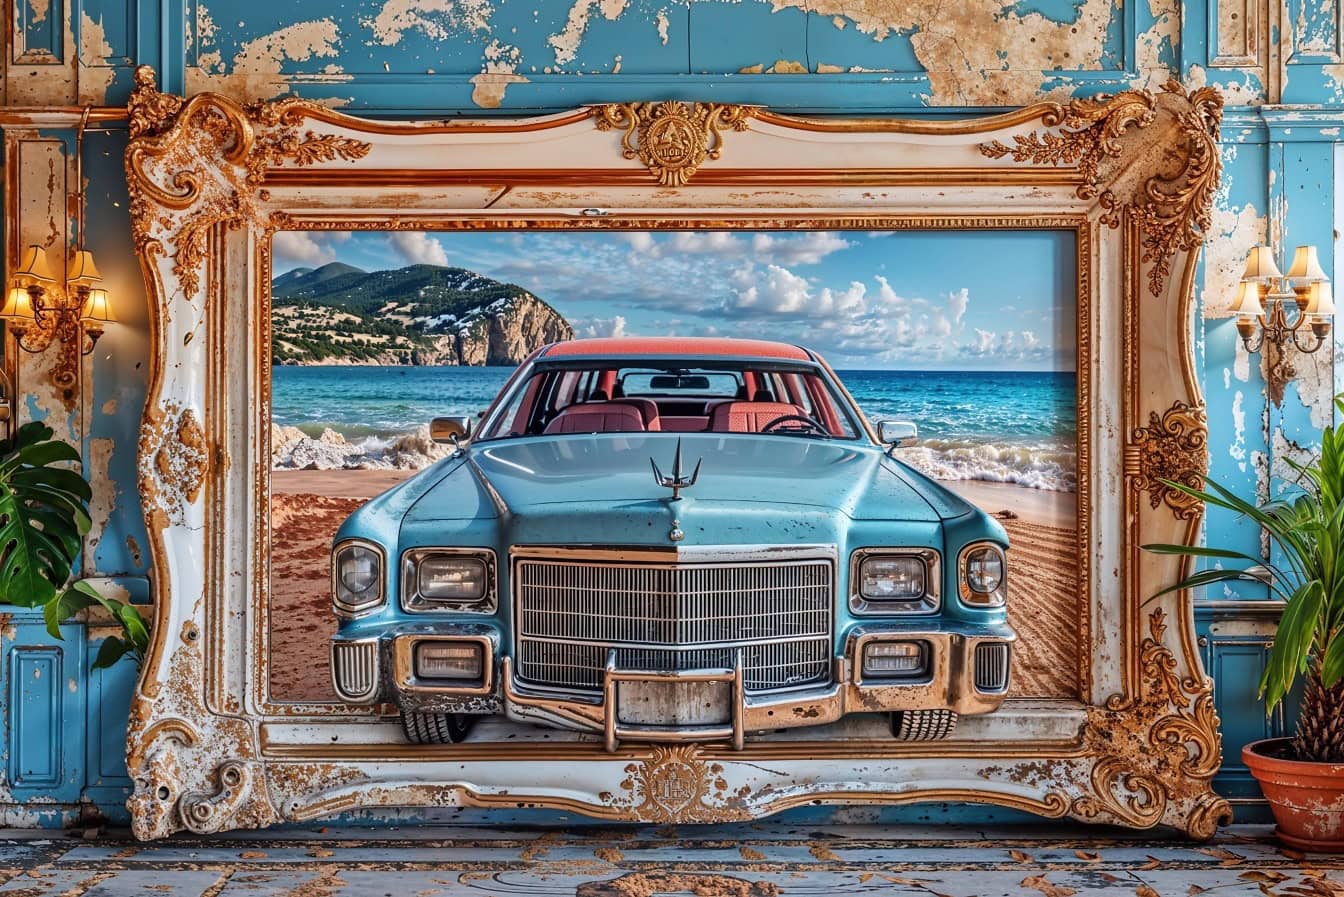 Egy klasszikus amerikai Cadillac autó nagy 3D-s képe lóg a falon egy régi viktoriánus keretben